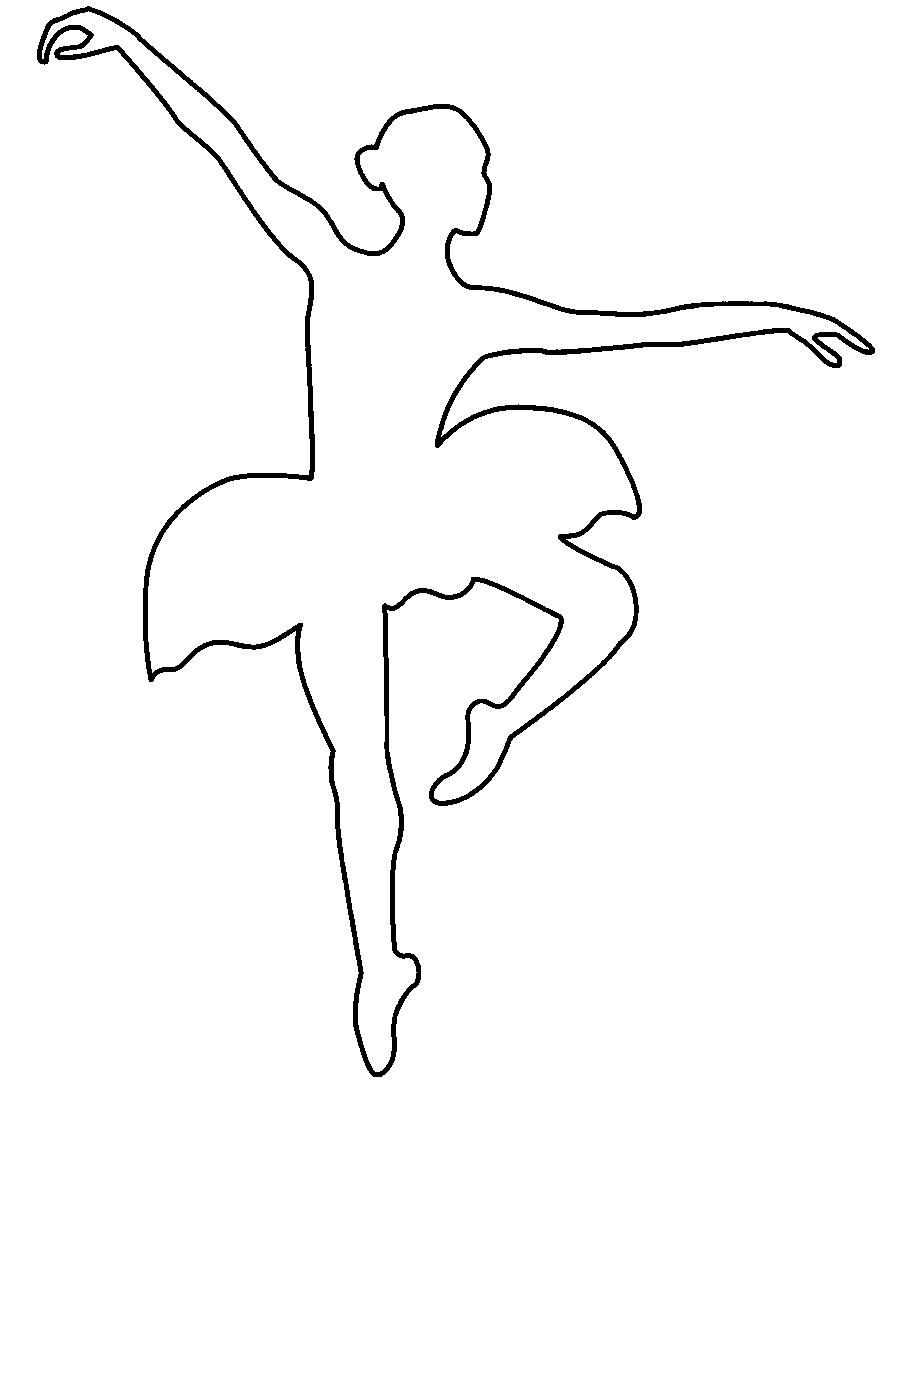 Трафарет балерины скачать распечатать форматом а4